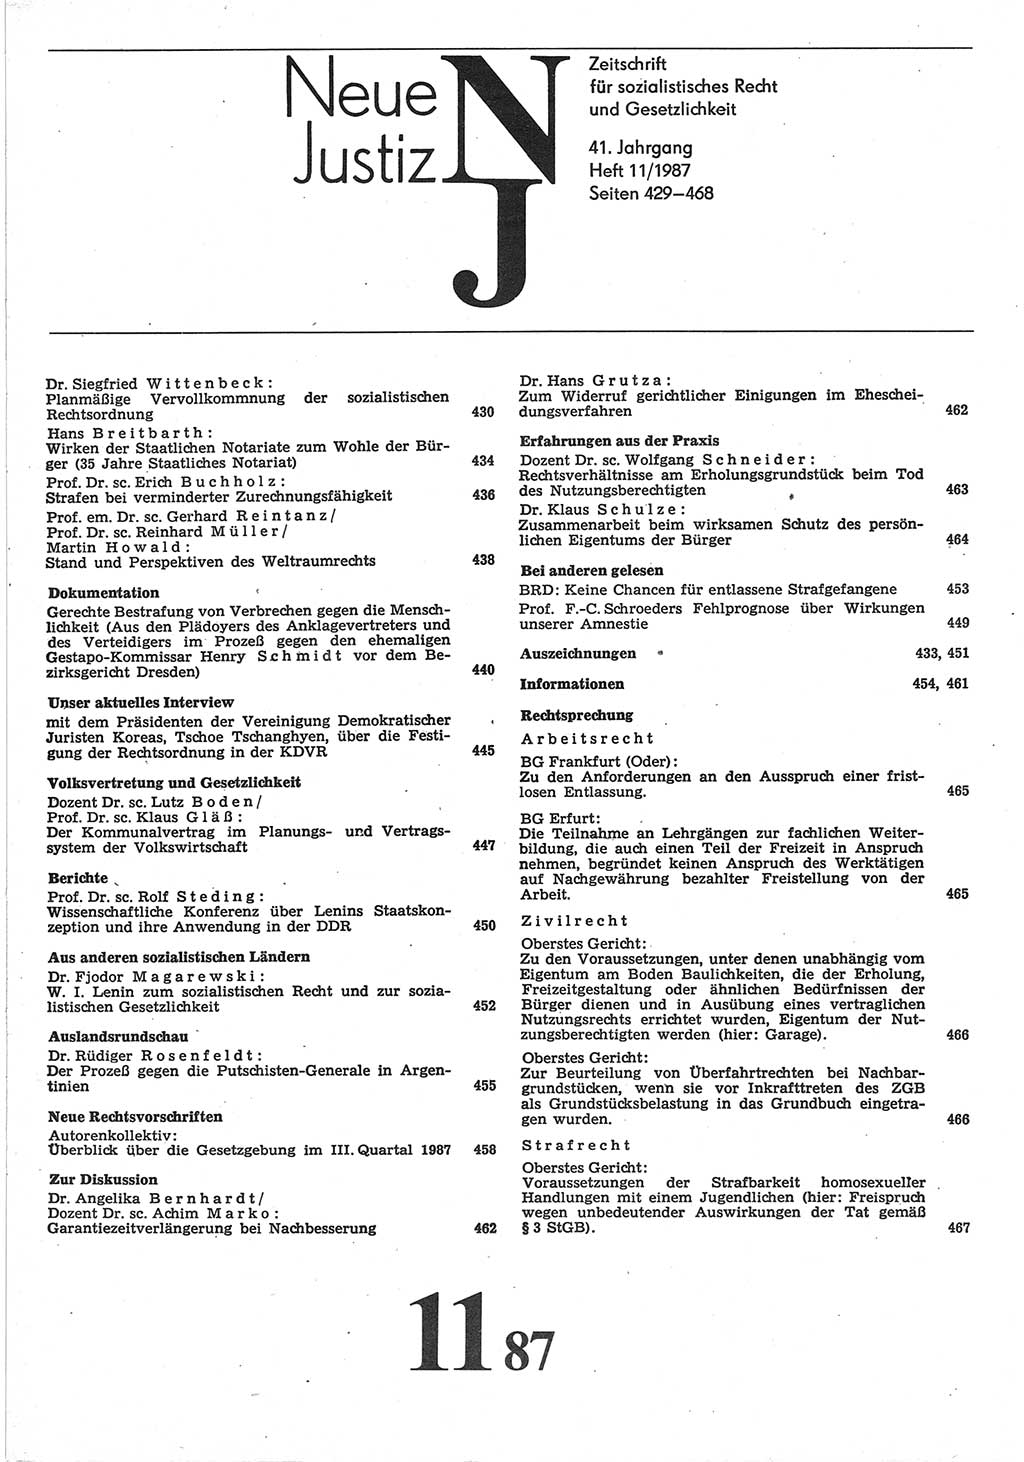 Neue Justiz (NJ), Zeitschrift für sozialistisches Recht und Gesetzlichkeit [Deutsche Demokratische Republik (DDR)], 41. Jahrgang 1987, Seite 429 (NJ DDR 1987, S. 429)